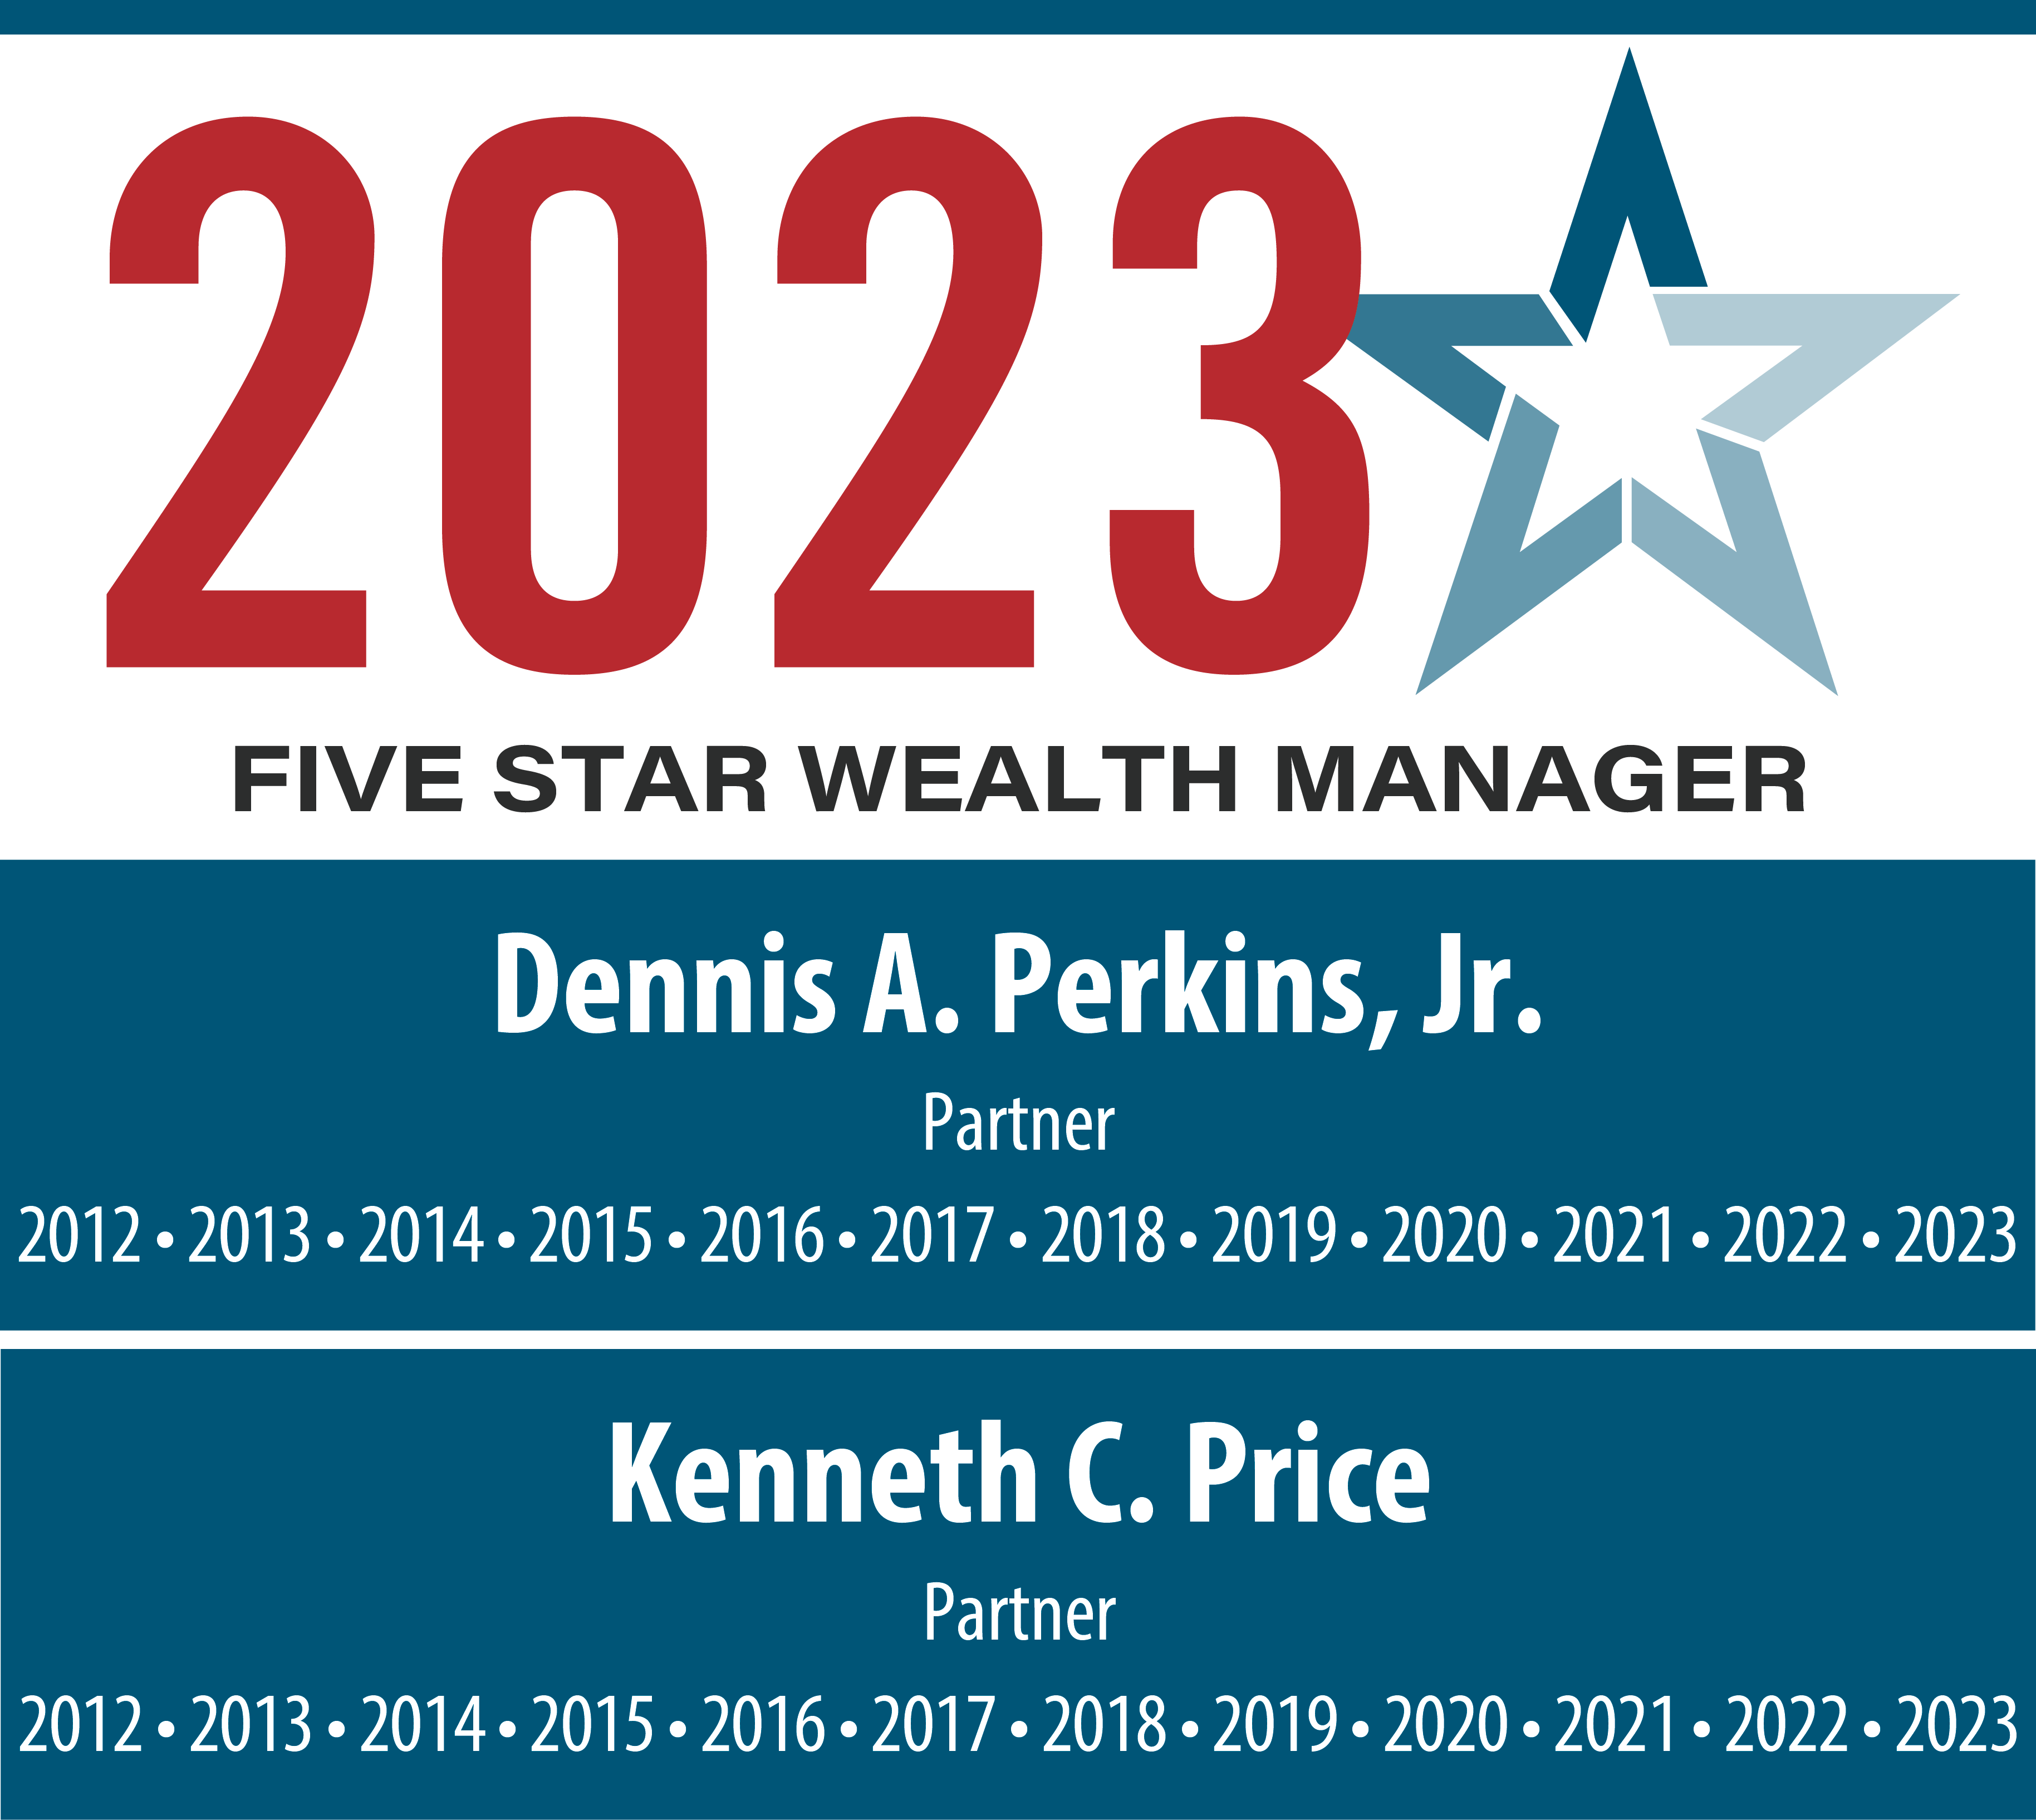 2022 Five Star Wealth Manager.  Kenneth Price, partner.  Dennis Perkins Jr., partner